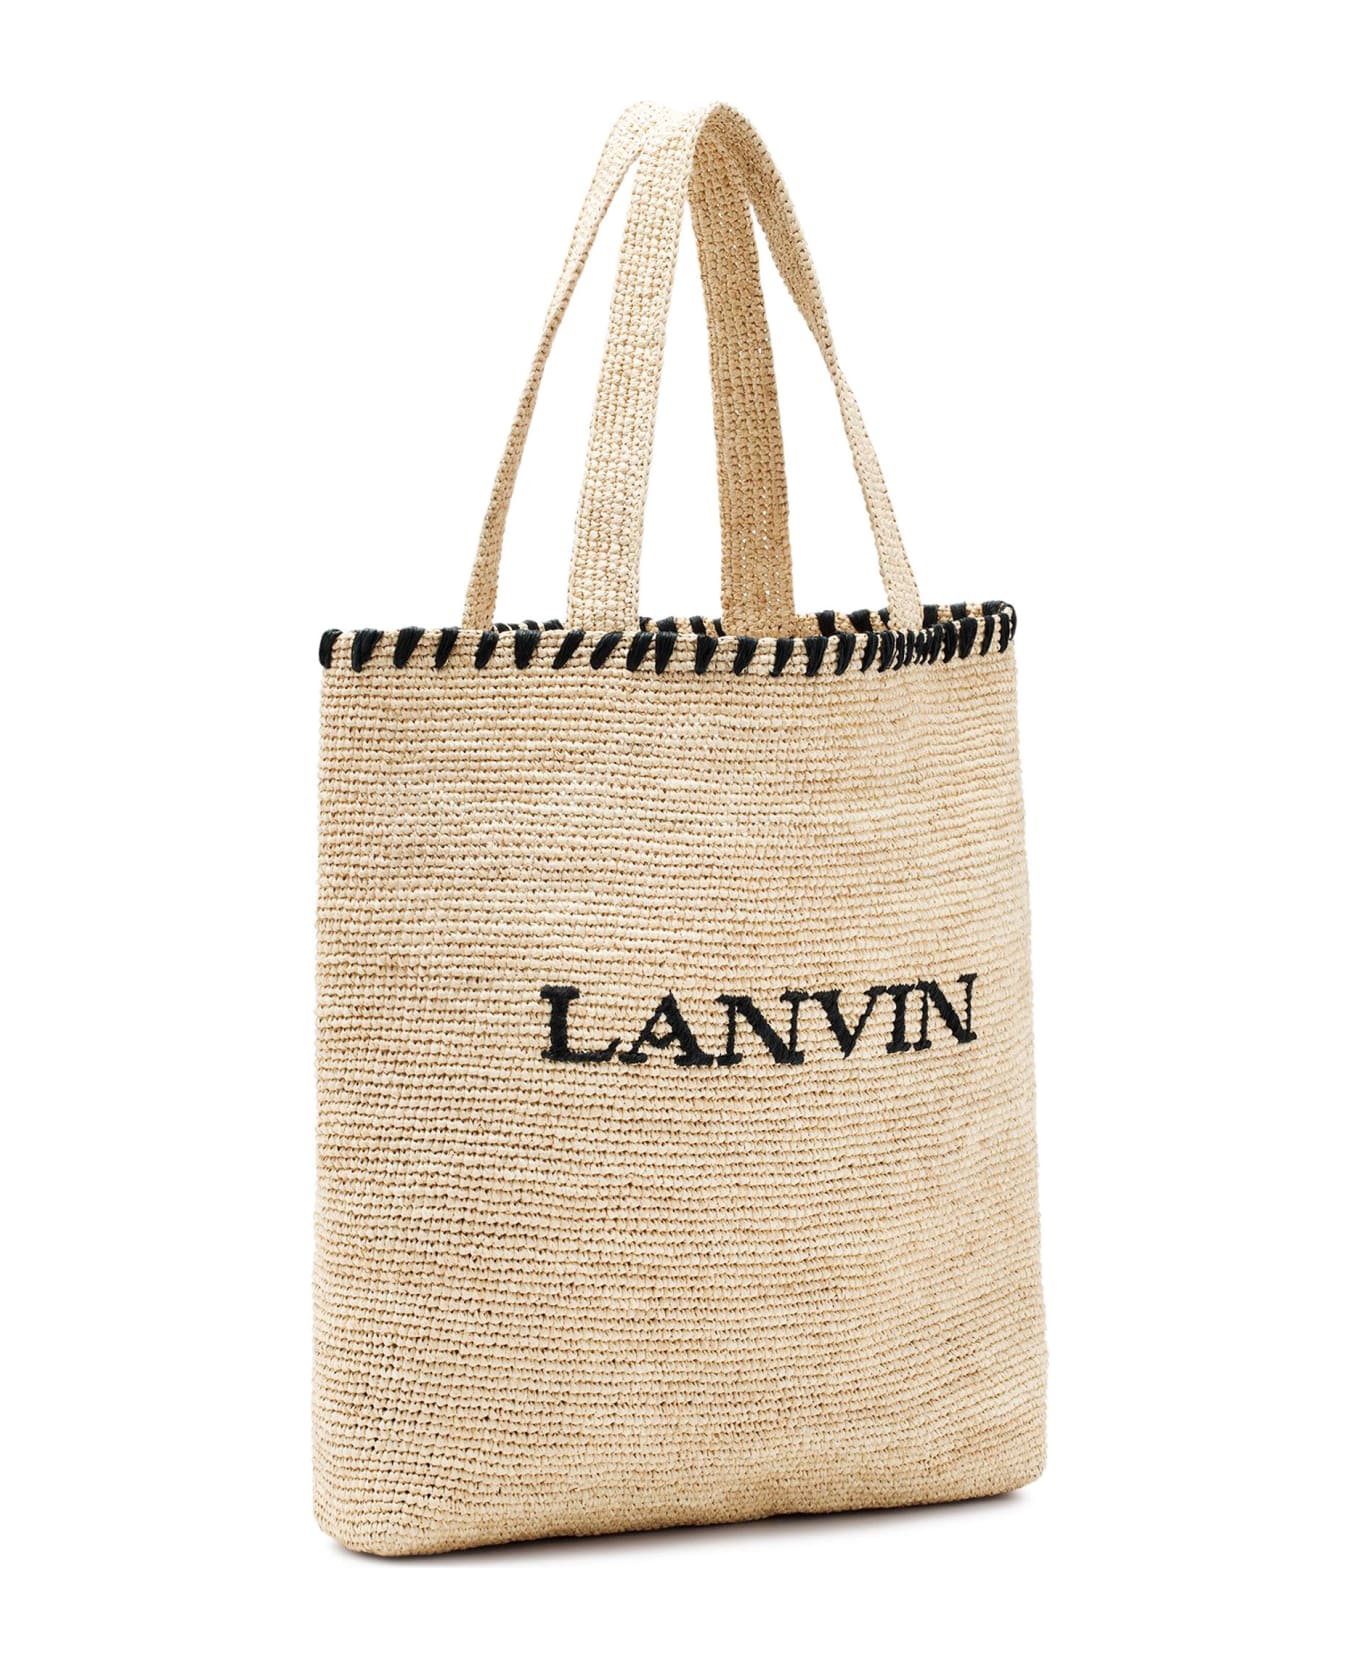 Lanvin Tote Bag In Raffia - Beige